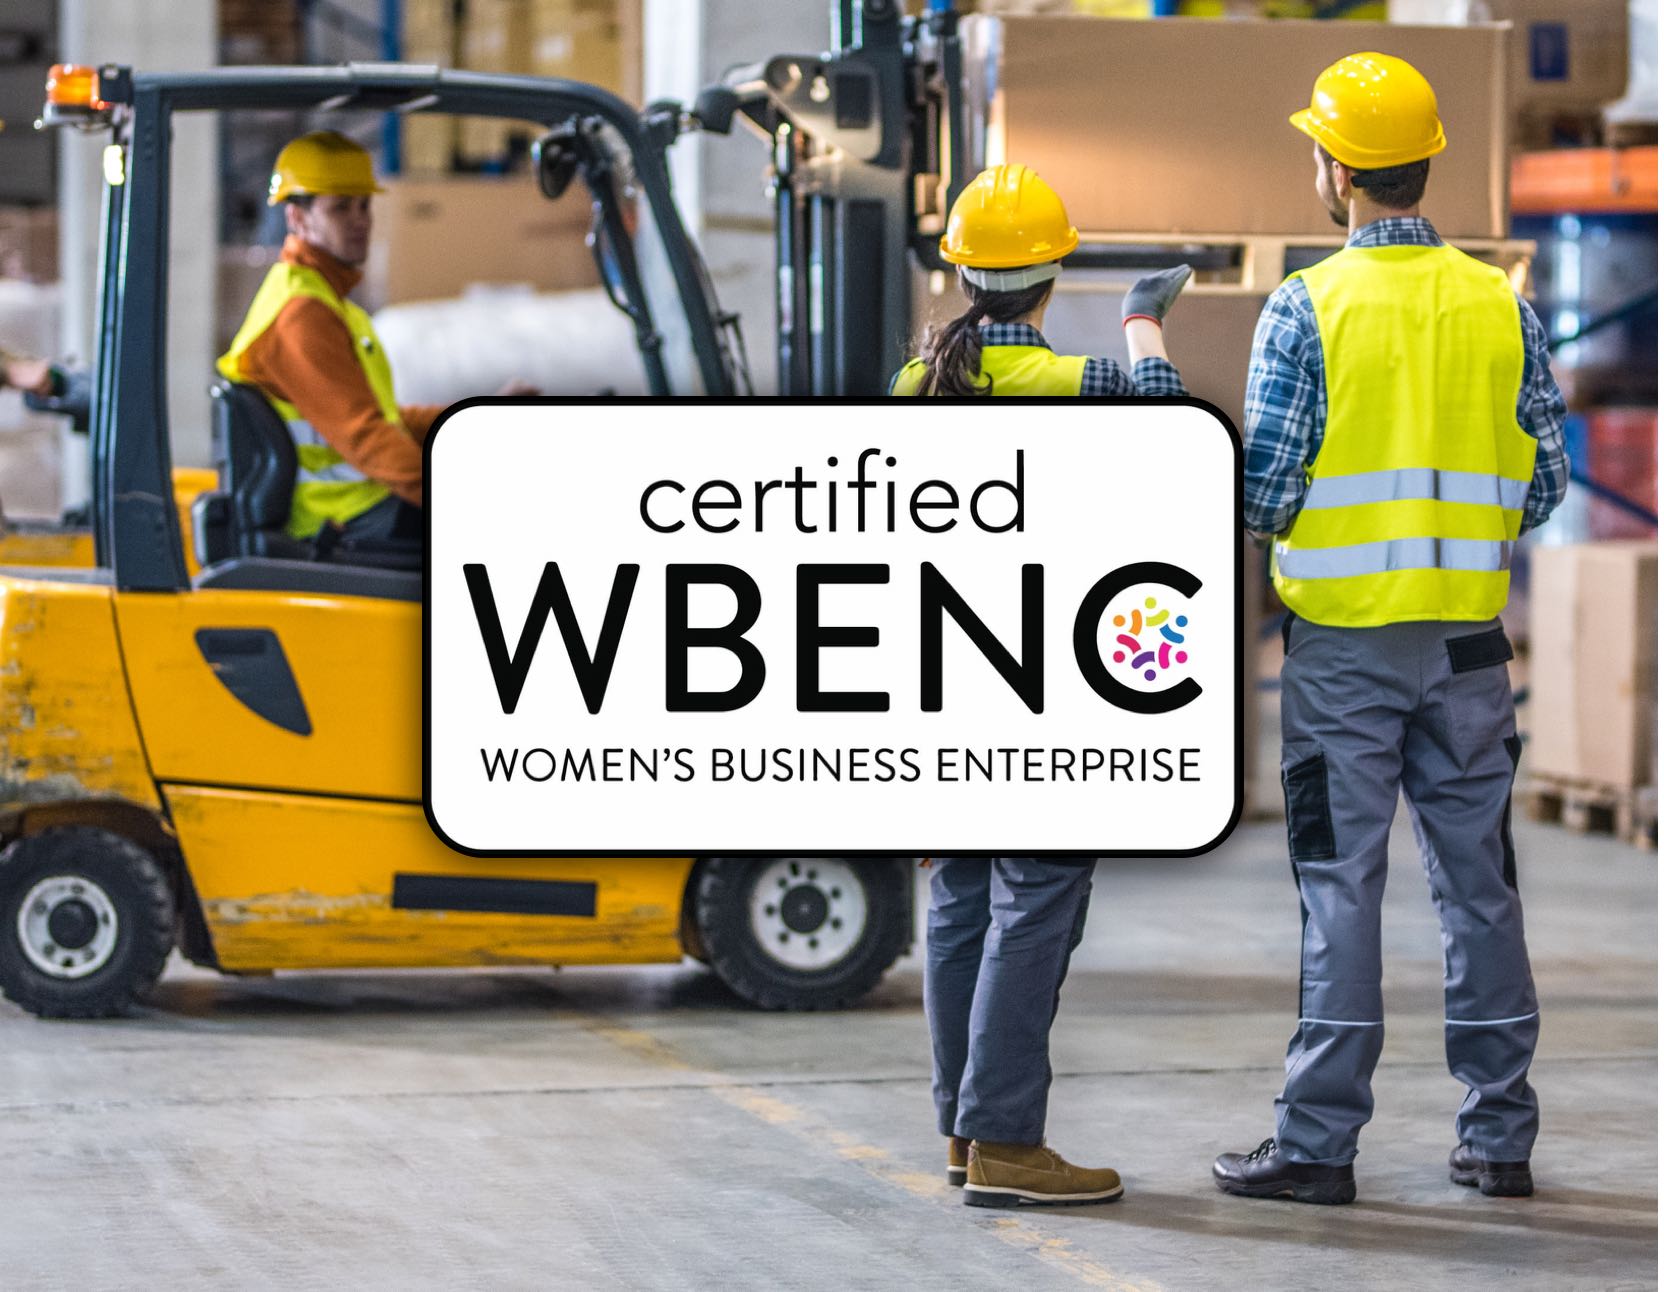 Base is women's business enterprise certified.